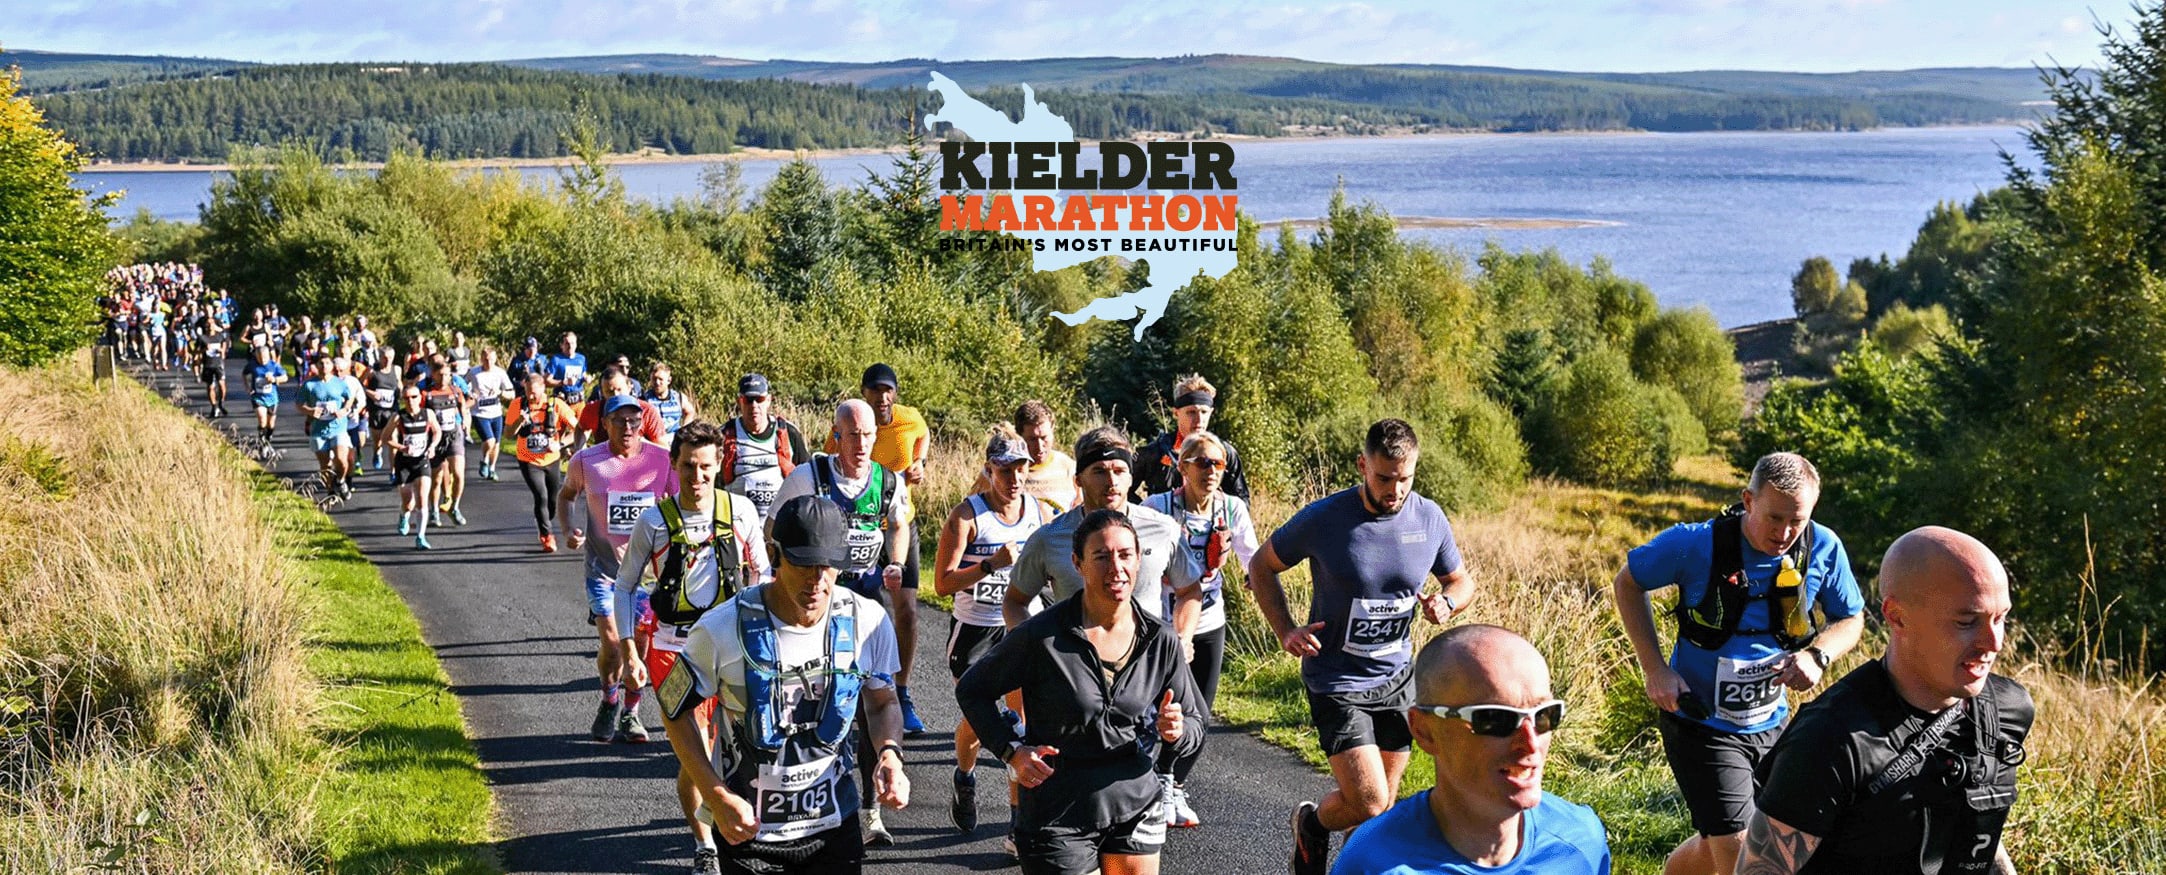 Kielder Marathon Weekend